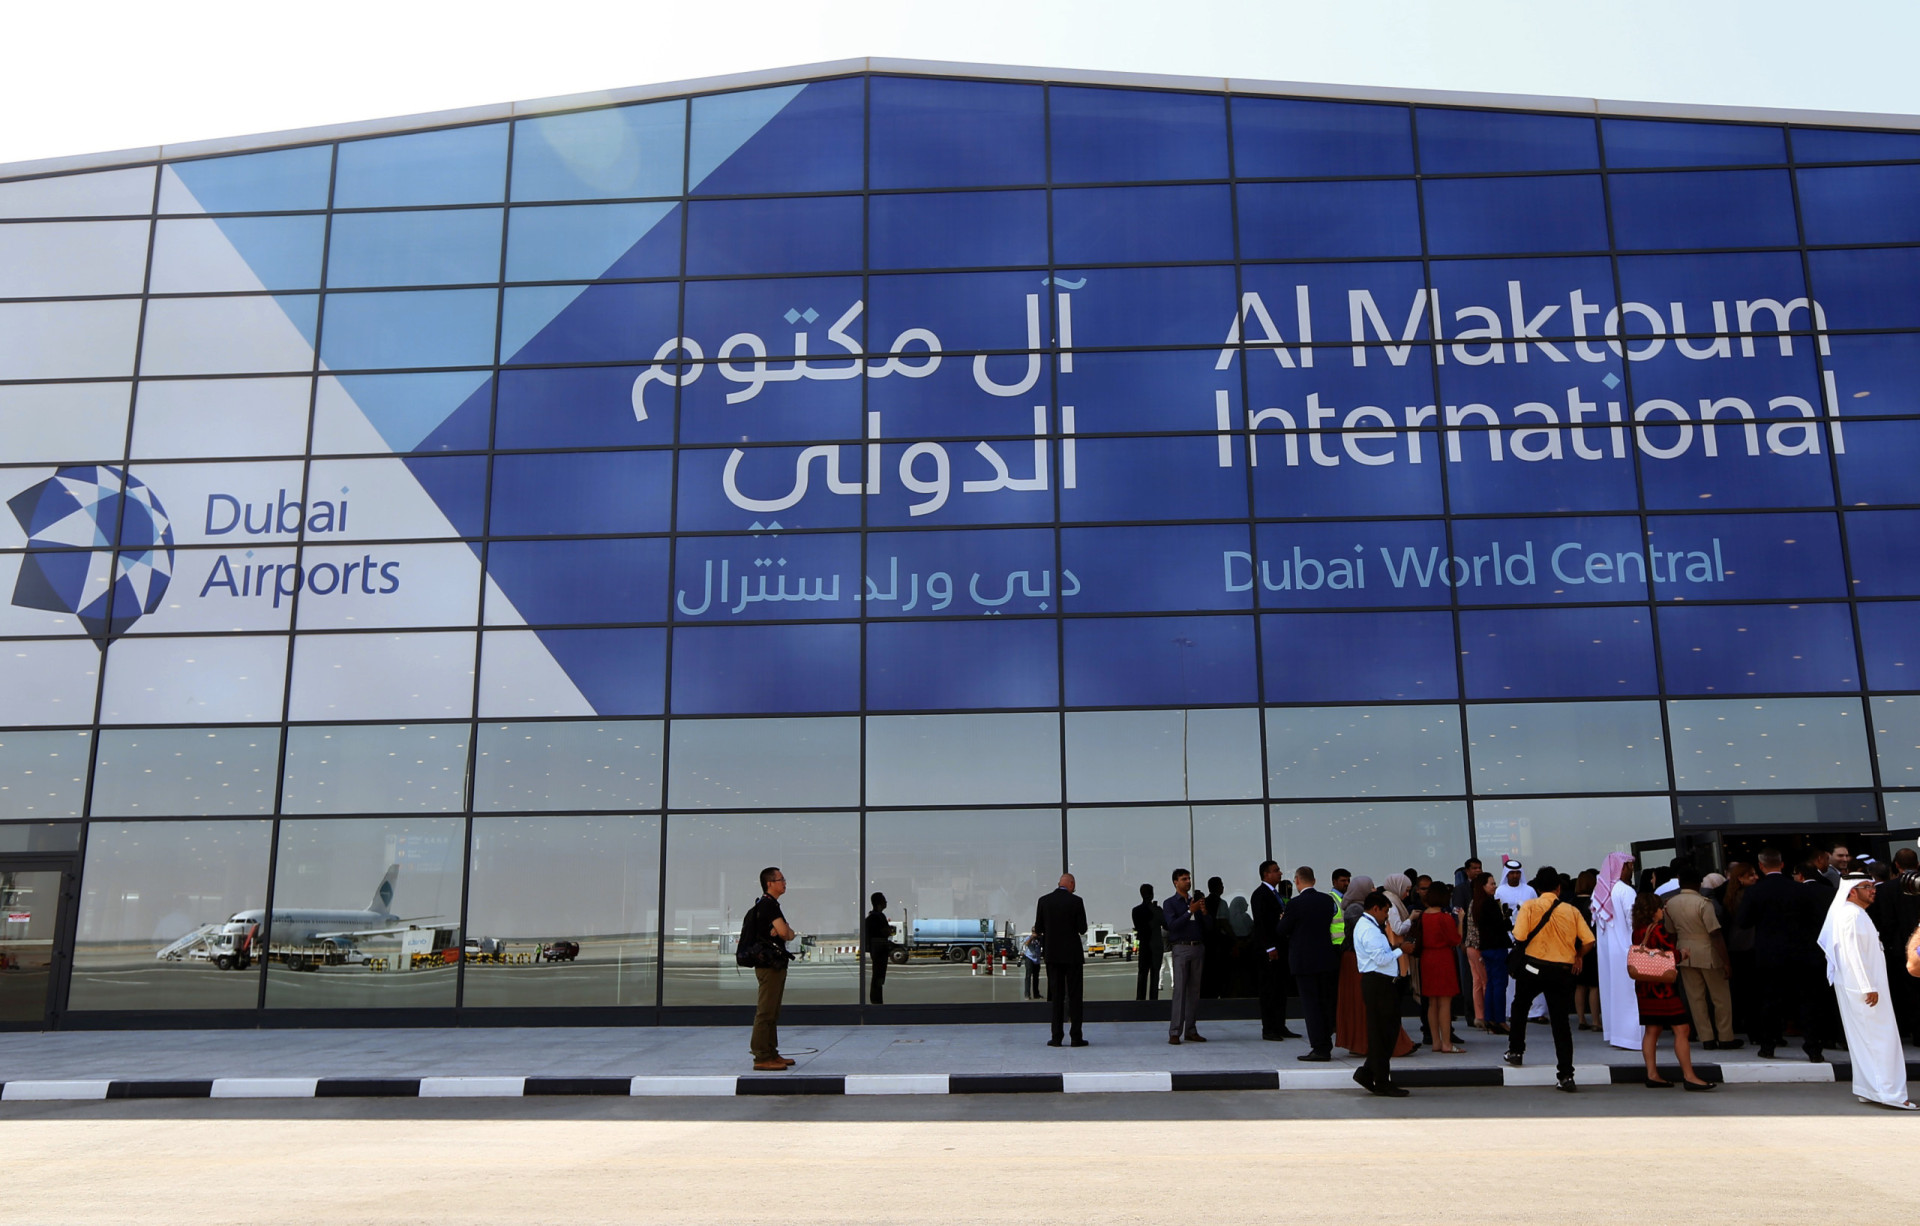 <p>Les Émirats arabes unis ont investi dans l'agrandissement de l'aéroport international Al Maktoum, qui devrait coûter 80 milliards de dollars au total, soit 74 milliards d'euros.</p><p><a href="https://www.msn.com/fr-ca/community/channel/vid-7xx8mnucu55yw63we9va2gwr7uihbxwc68fxqp25x6tg4ftibpra?cvid=94631541bc0f4f89bfd59158d696ad7e">Suivez-nous et accédez tous les jours à du contenu exclusif</a></p>